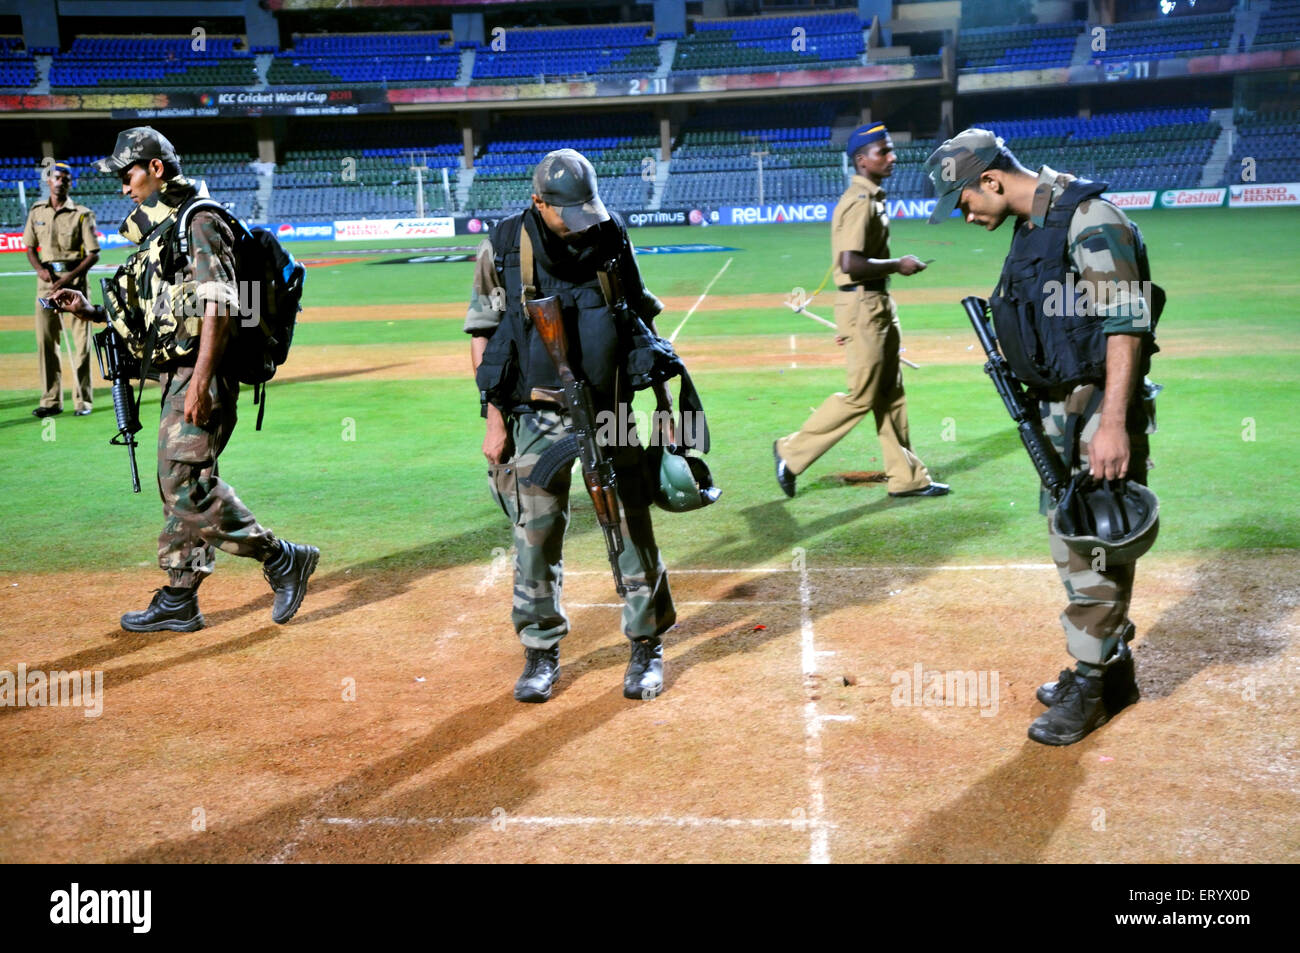 Équipe de réponse rapide commandos Mumbai police inspectant le terrain de cricket Stade Wankhede coupe du monde de cricket 2011 Bombay Mumbai Maharashtra Inde Asie Banque D'Images